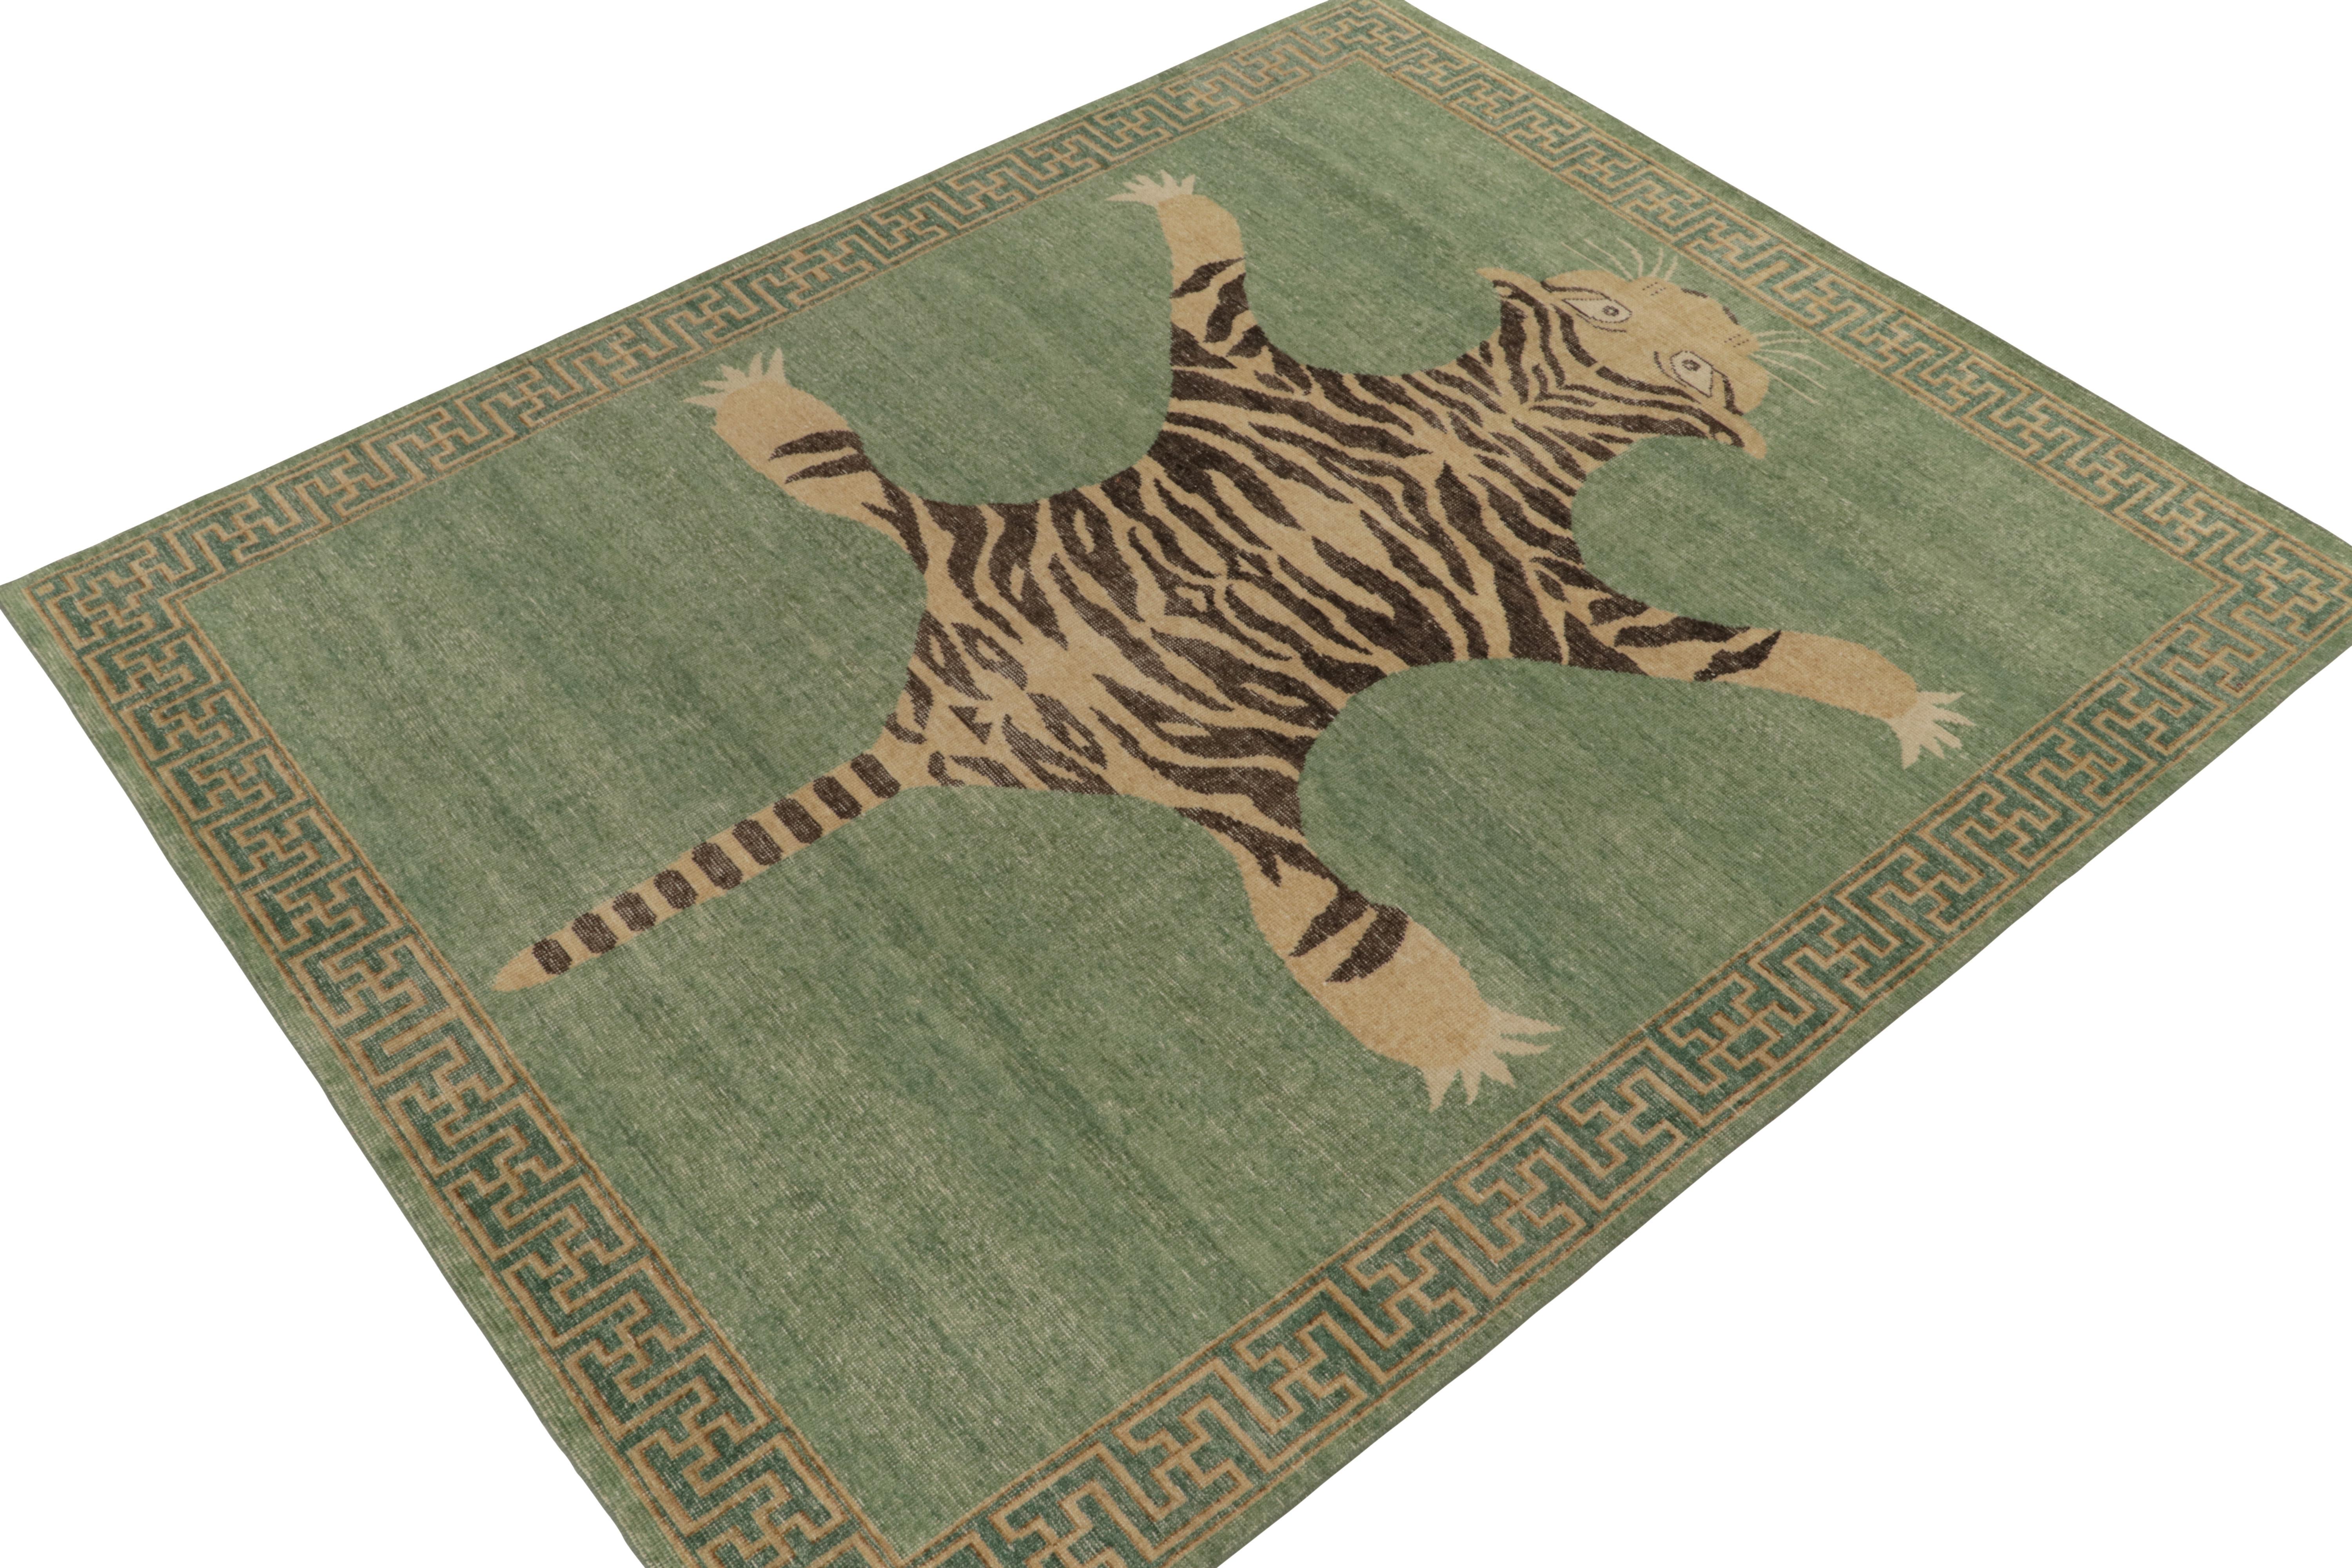 De la collection Homage de Rug & Kilim, une pièce de 8x10 en laine nouée à la main qui reprend le tapis en peau de tigre dans toute sa gloire. 

Sur le design : Cette pièce s'inspire d'anciens tapis indiens en peau de tigre à la présence royale et